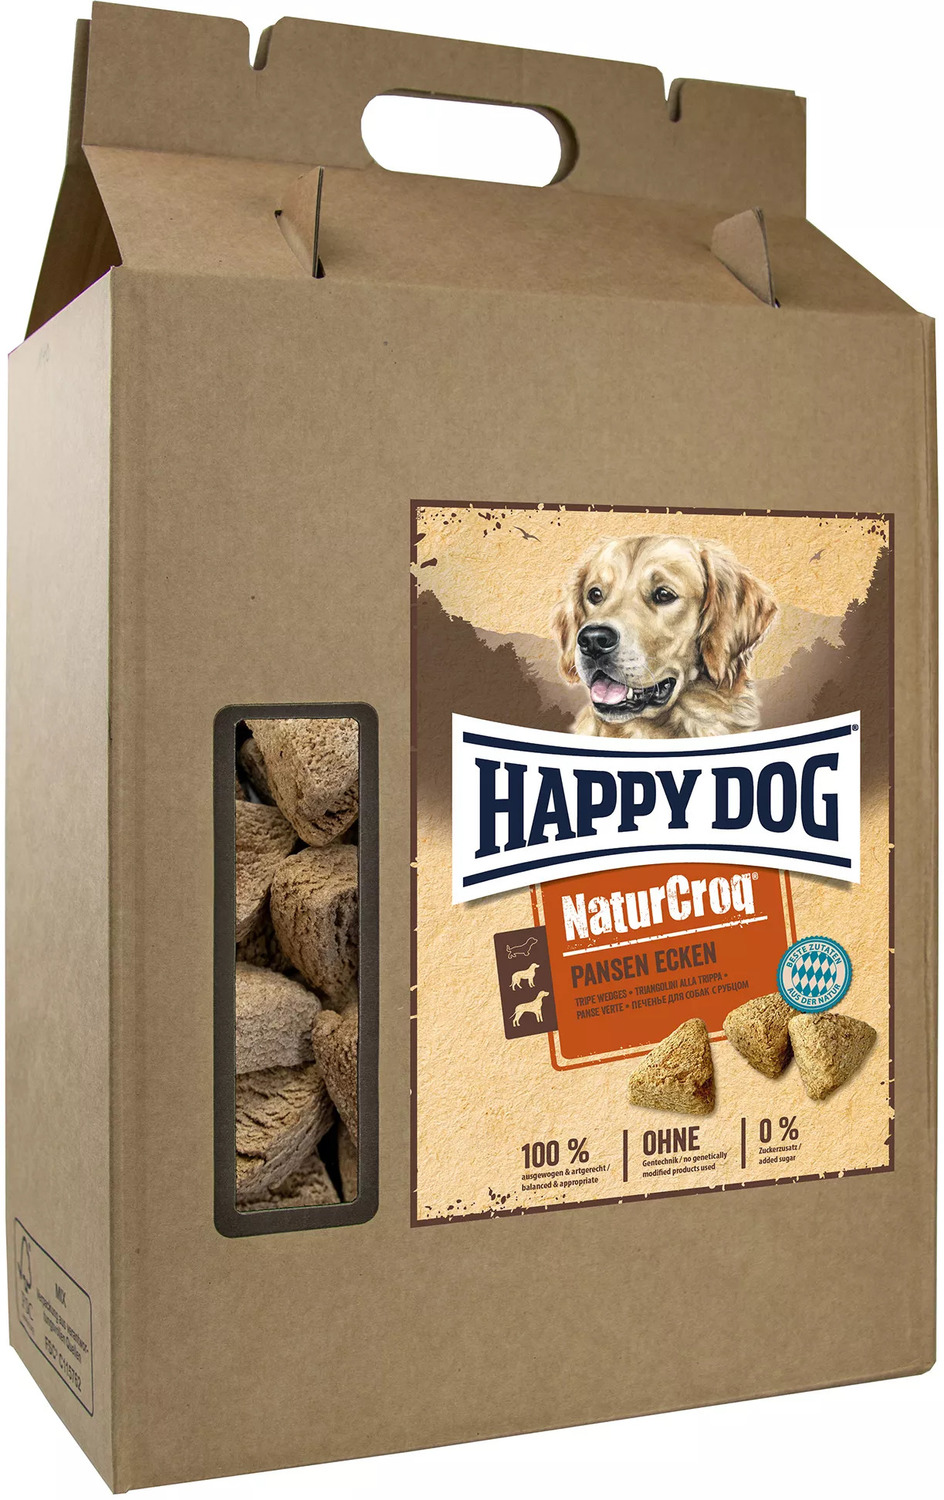 Happy Dog Pansen Ecke - Biscuiți pentru câini cu vitamine și minerale